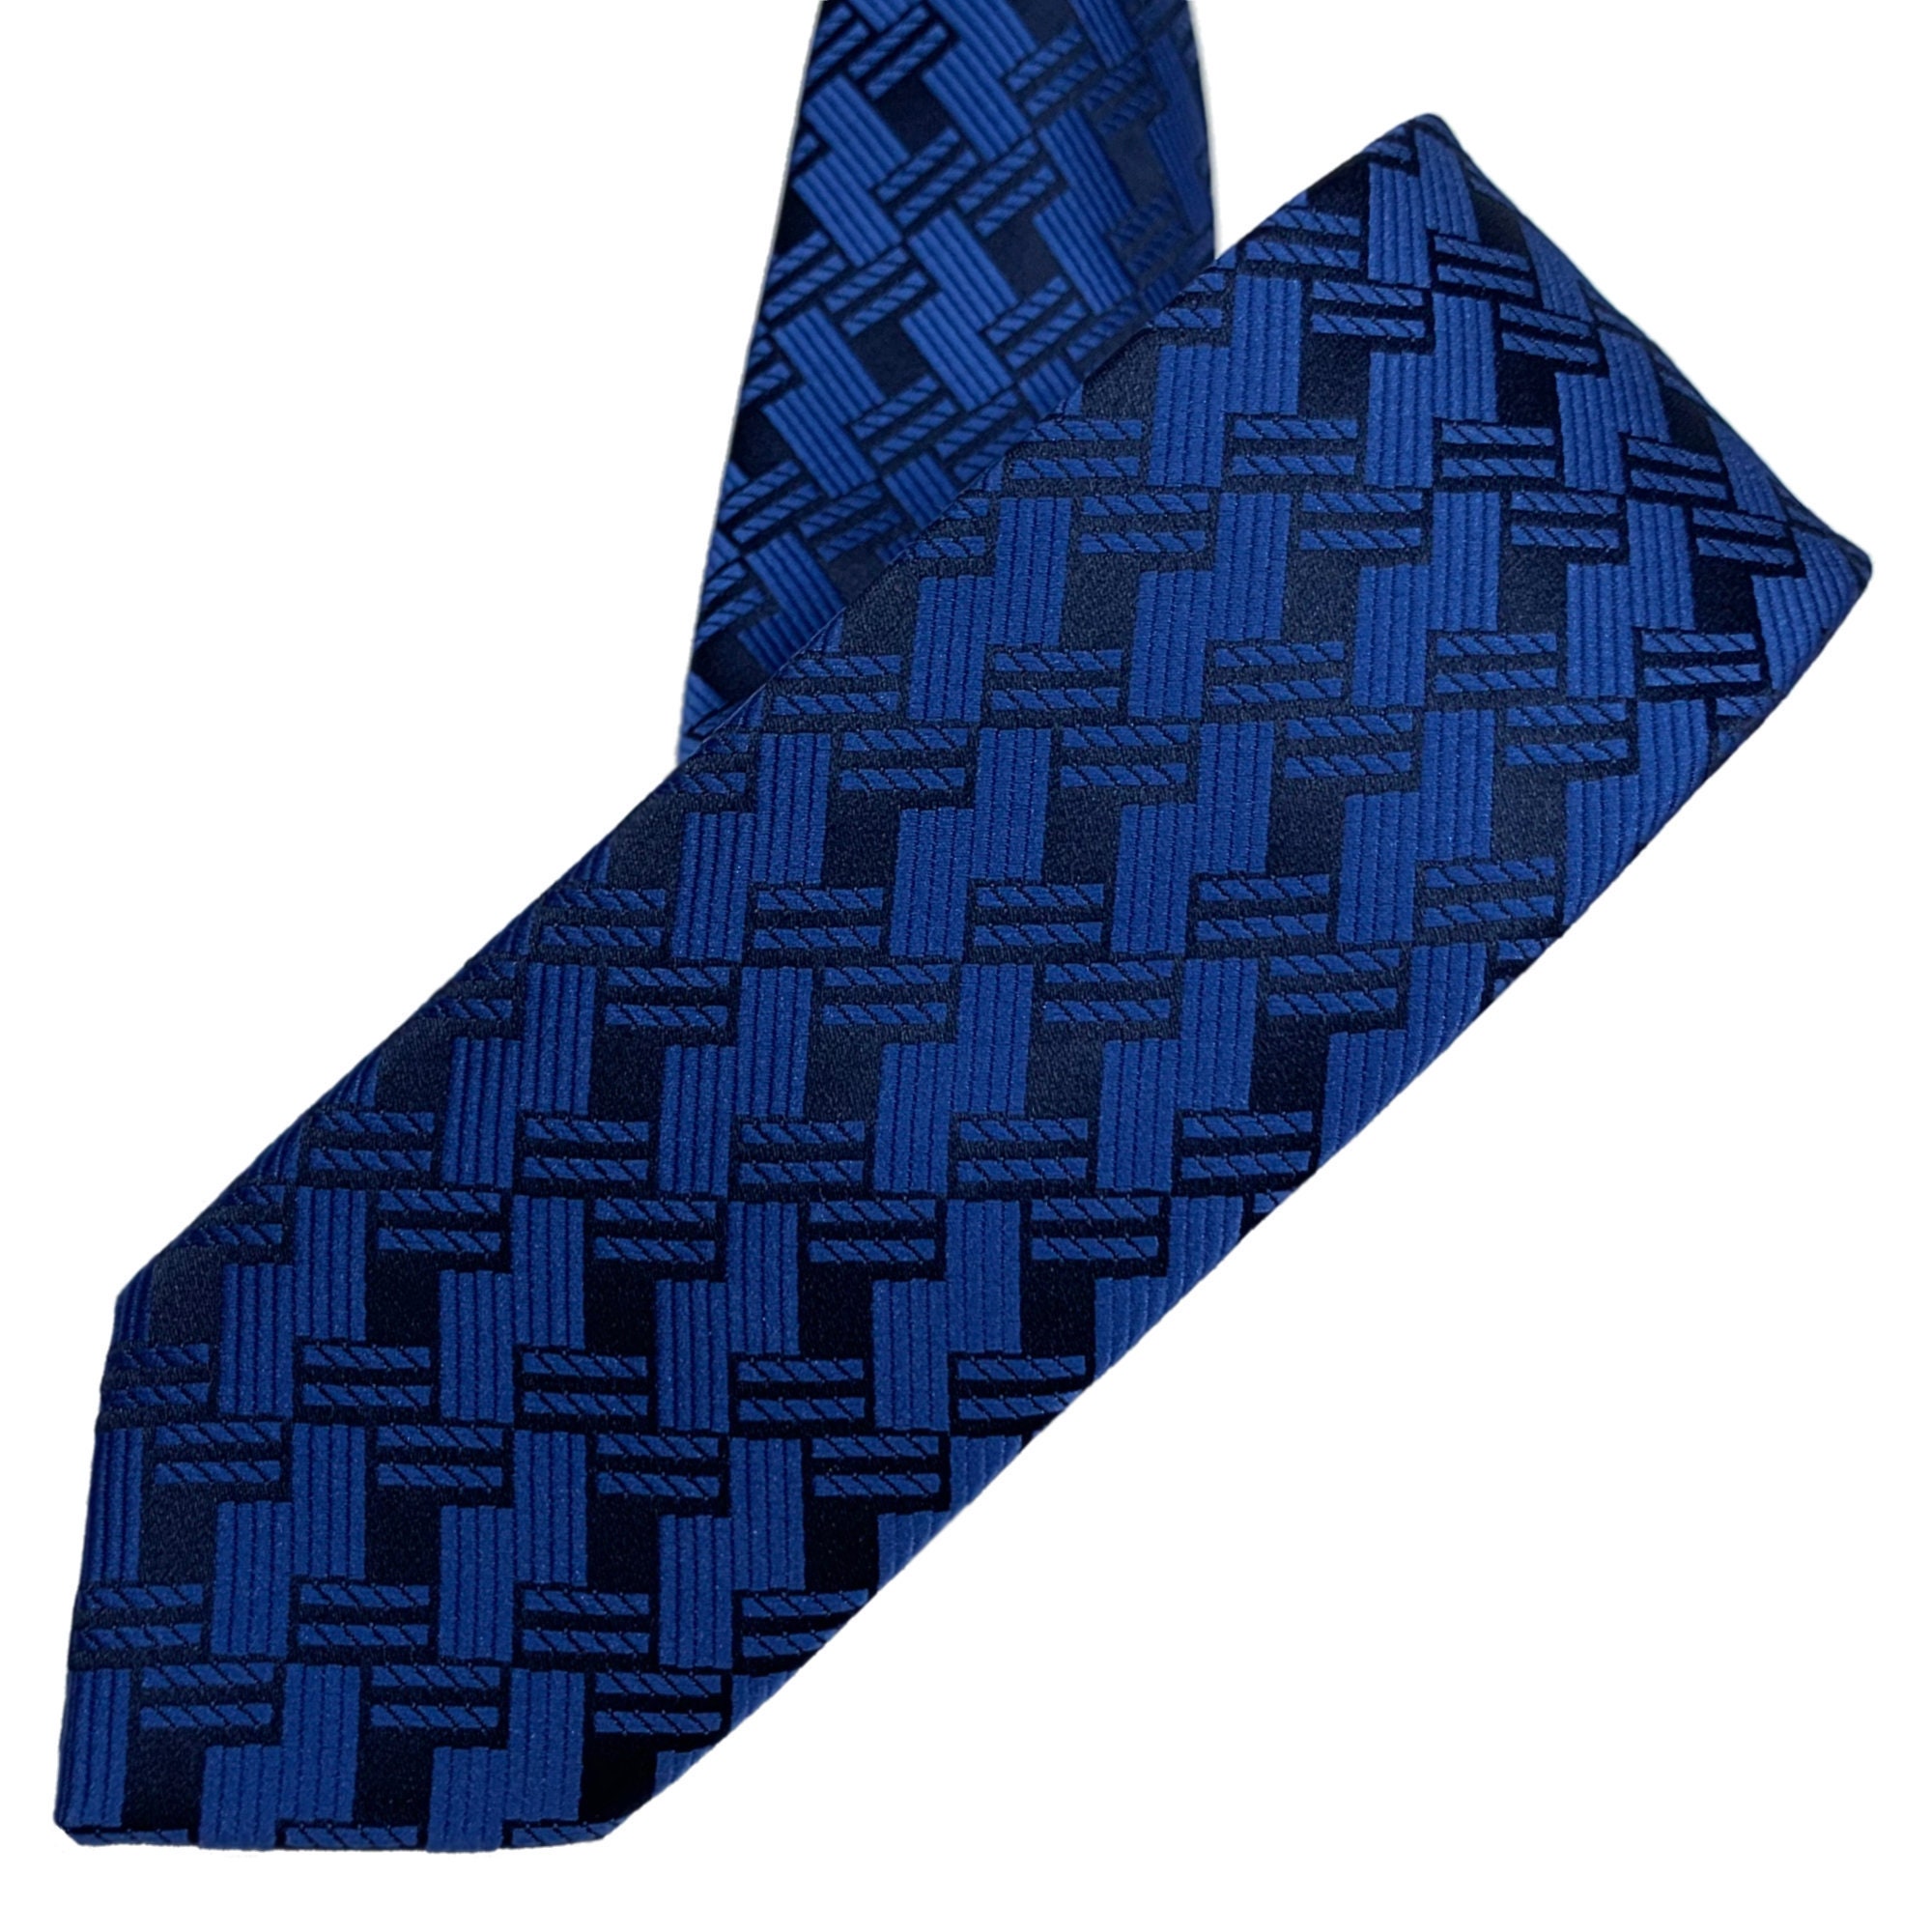 Cross Striped Tie With Dark Blue Basket Weave Pattern - Etsy UK